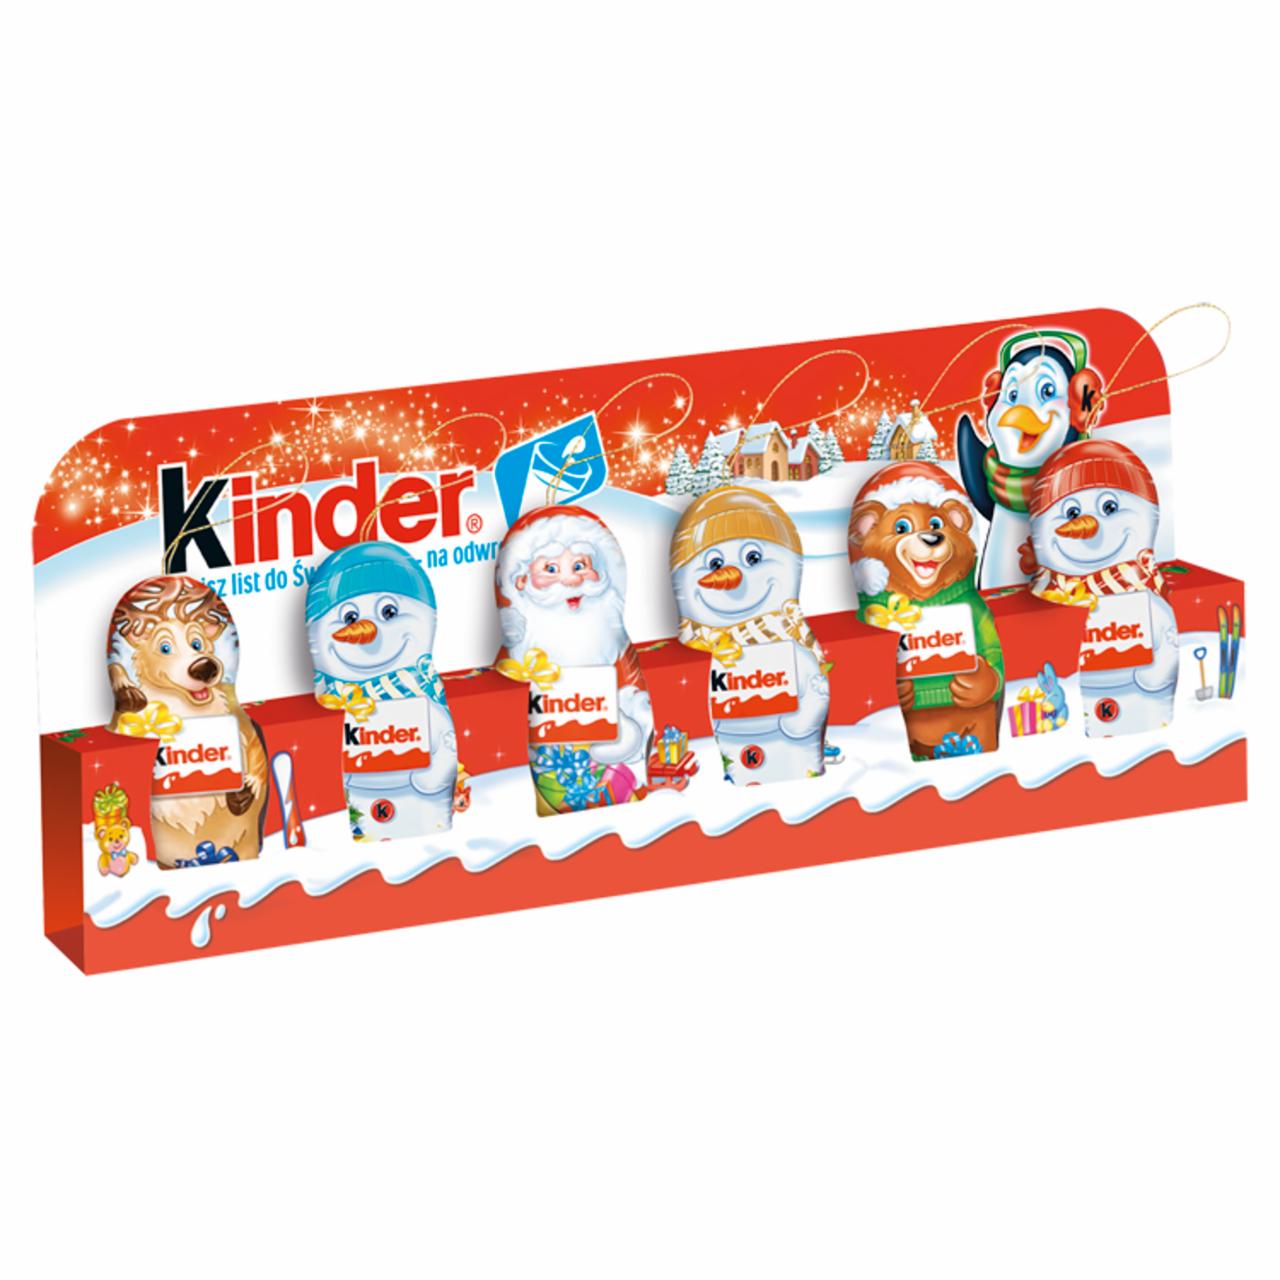 Zdjęcia - Kinder Figurki pokryte czekoladą mleczną 6 x 15 g